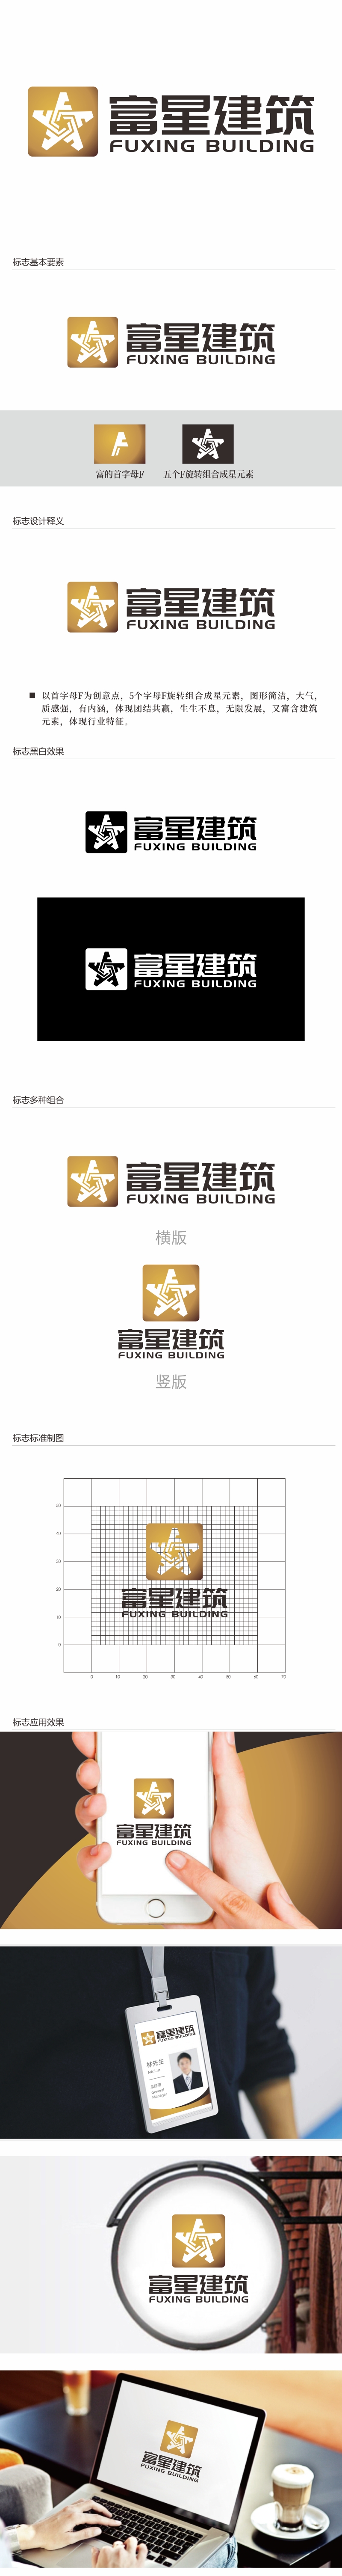 林思源的天津富星建筑工程有限公司logo设计